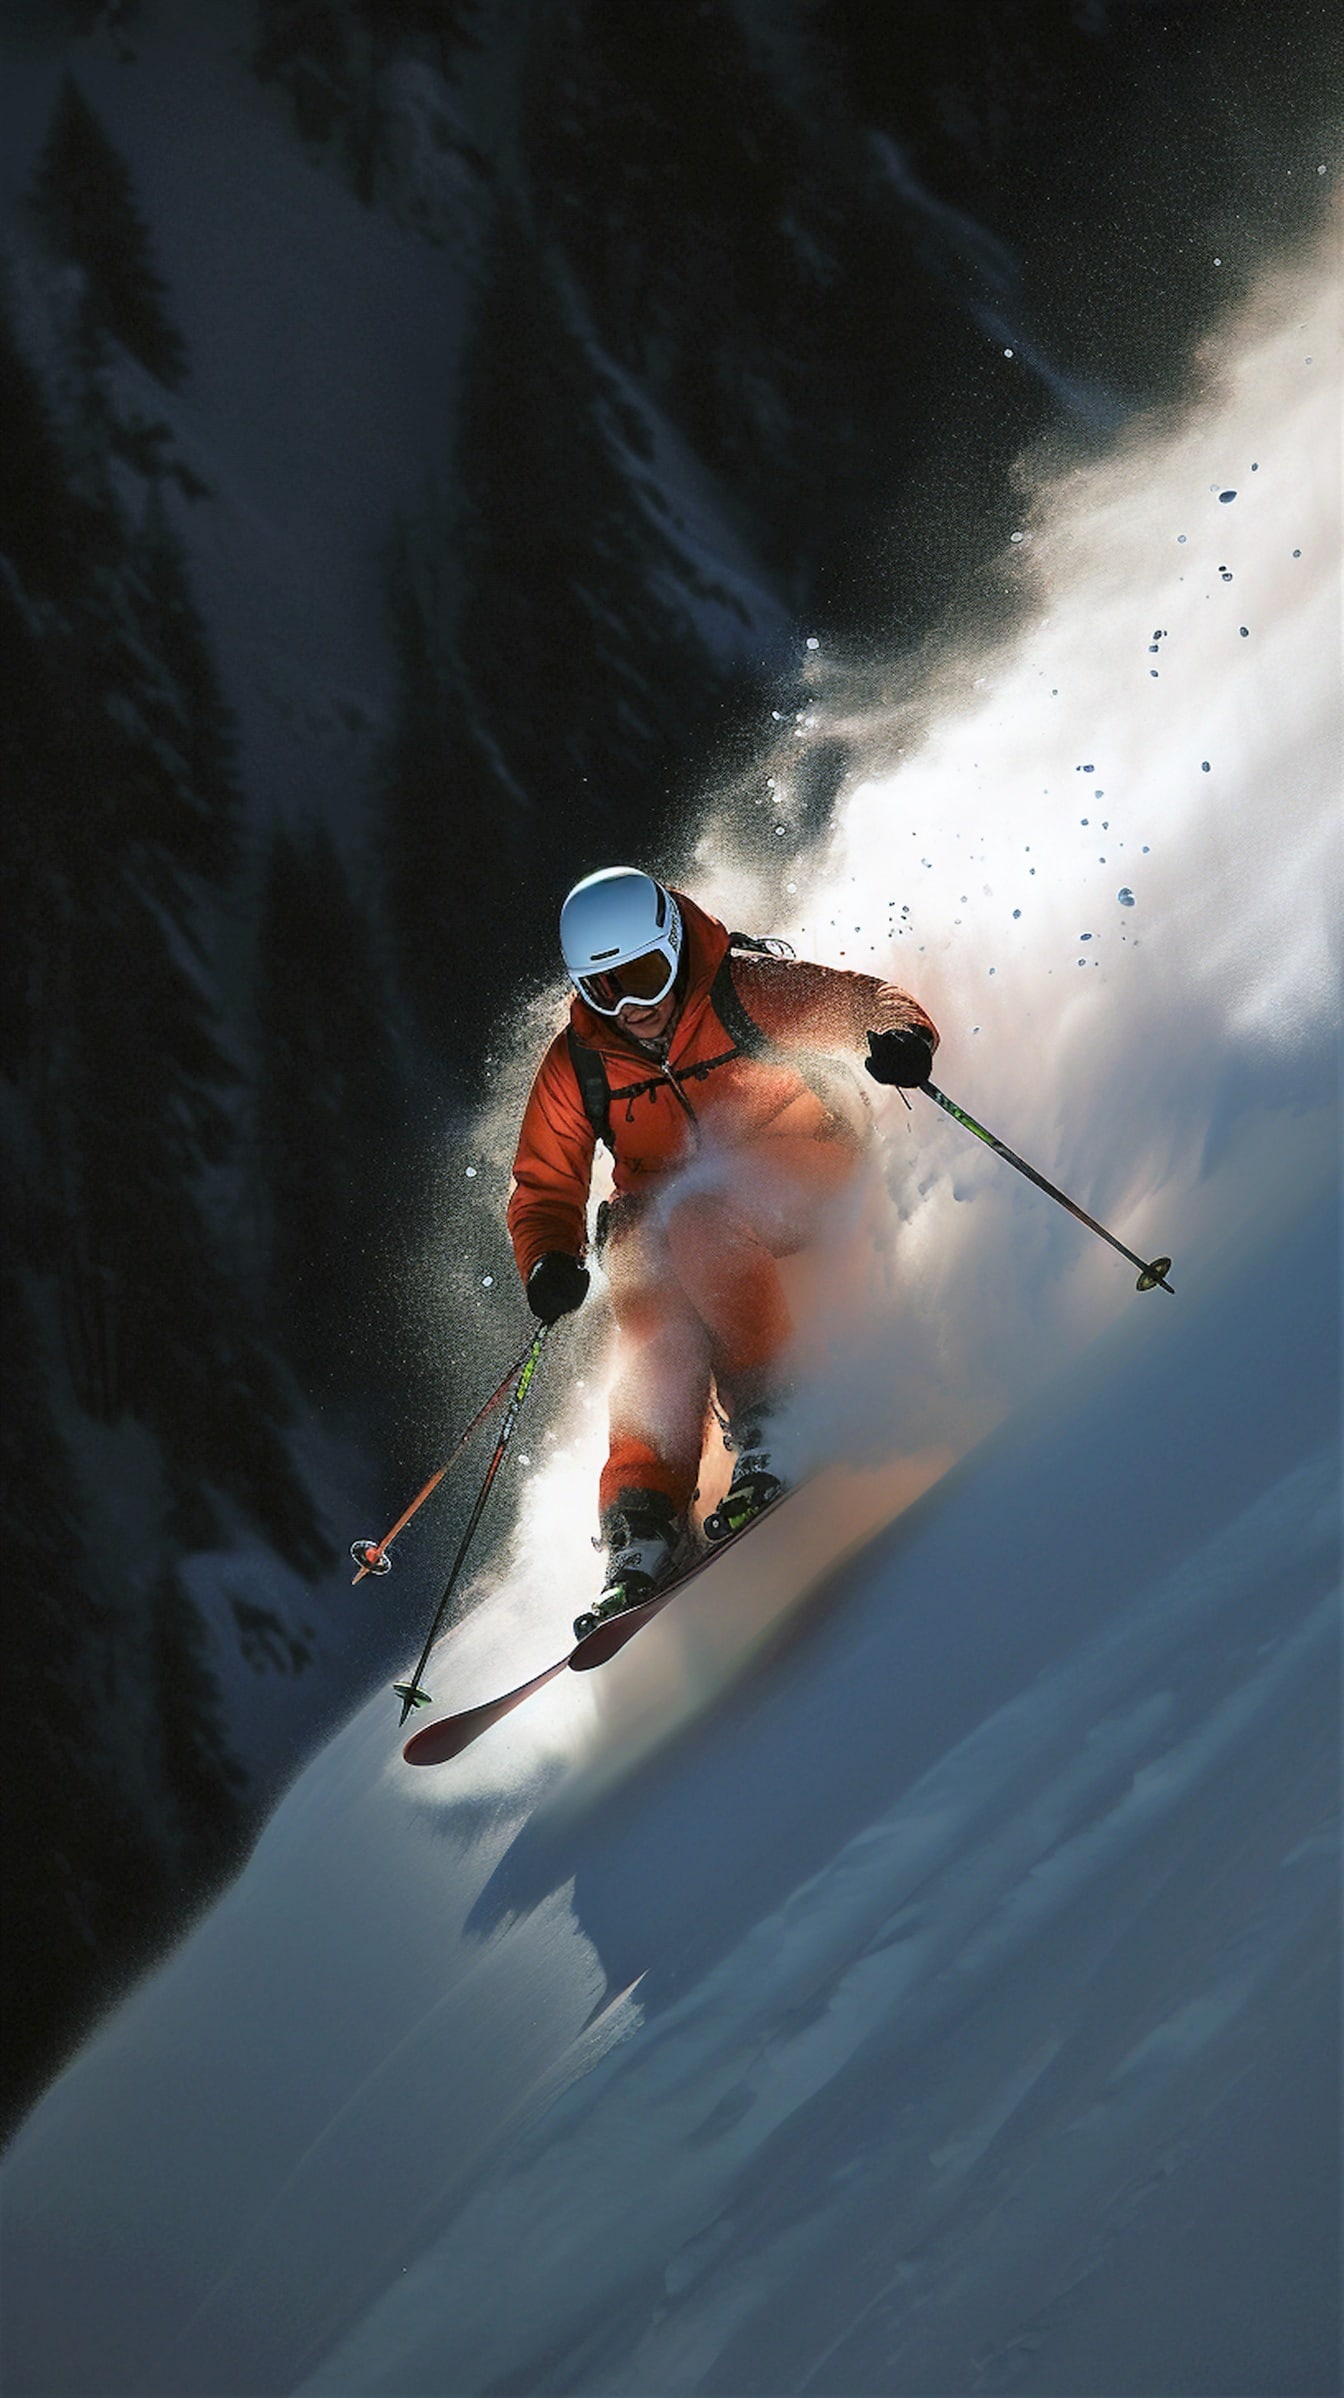 Turuncu sarı ceketli ekstrem kayakçı dağda kayak yapıyor